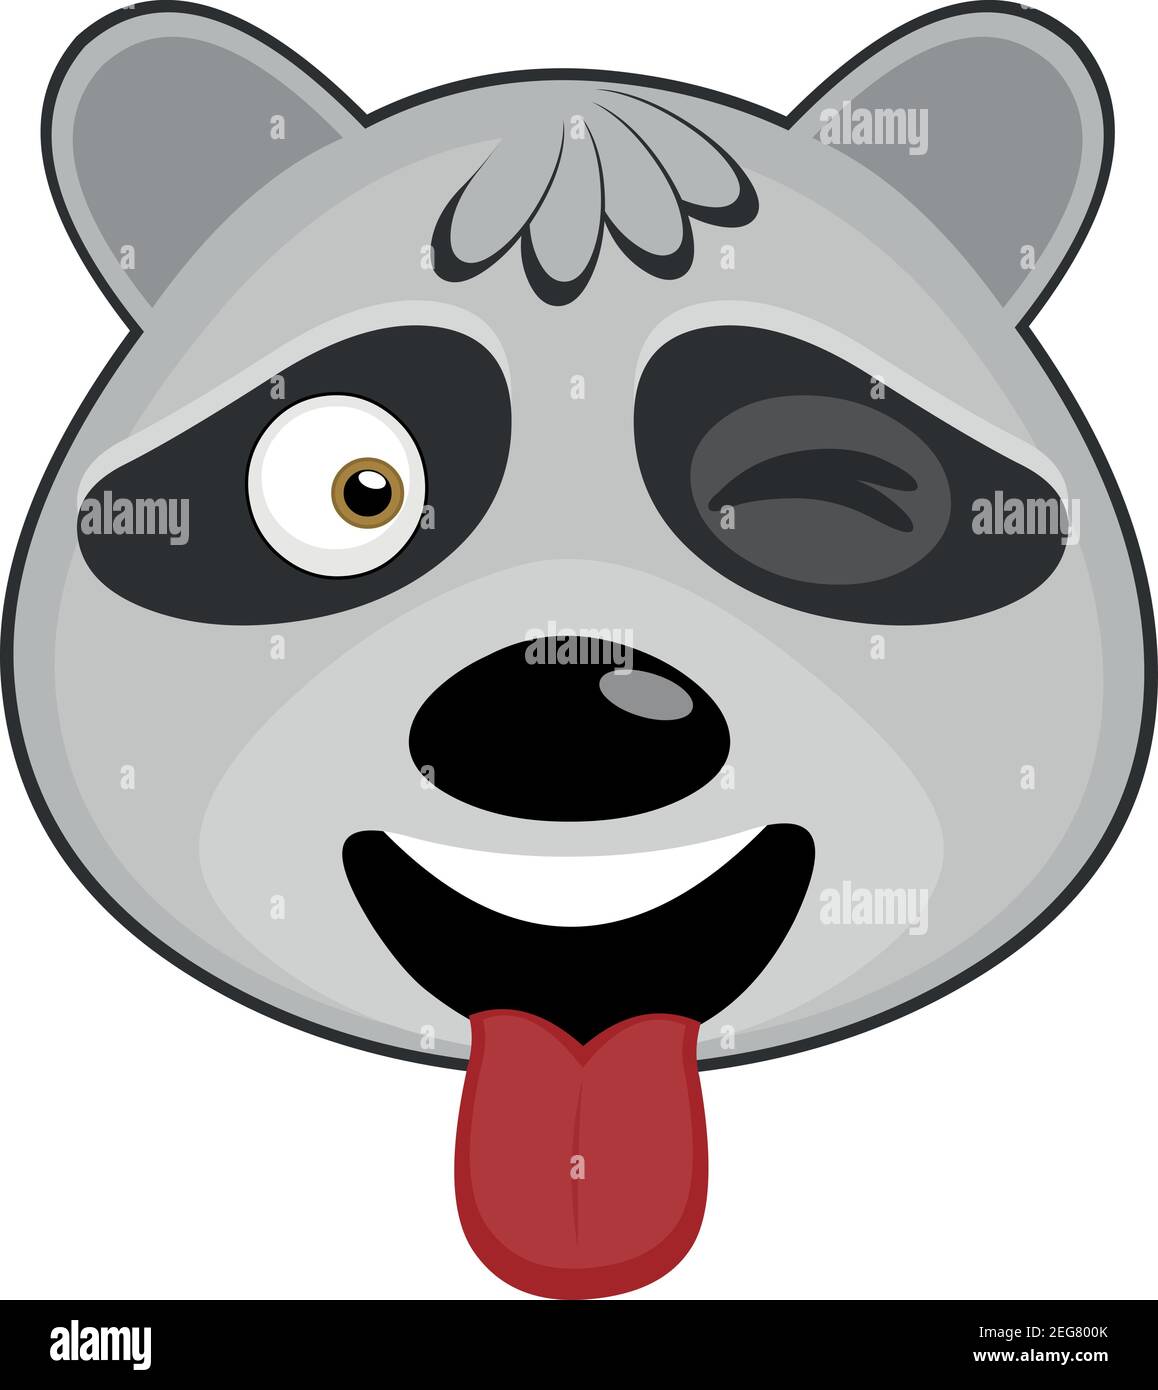 Vettore emoticon illustrazione cartoon di una testa di un raccoon con espressione felice, vagliando e attaccando la sua lingua con la bocca aperta Illustrazione Vettoriale